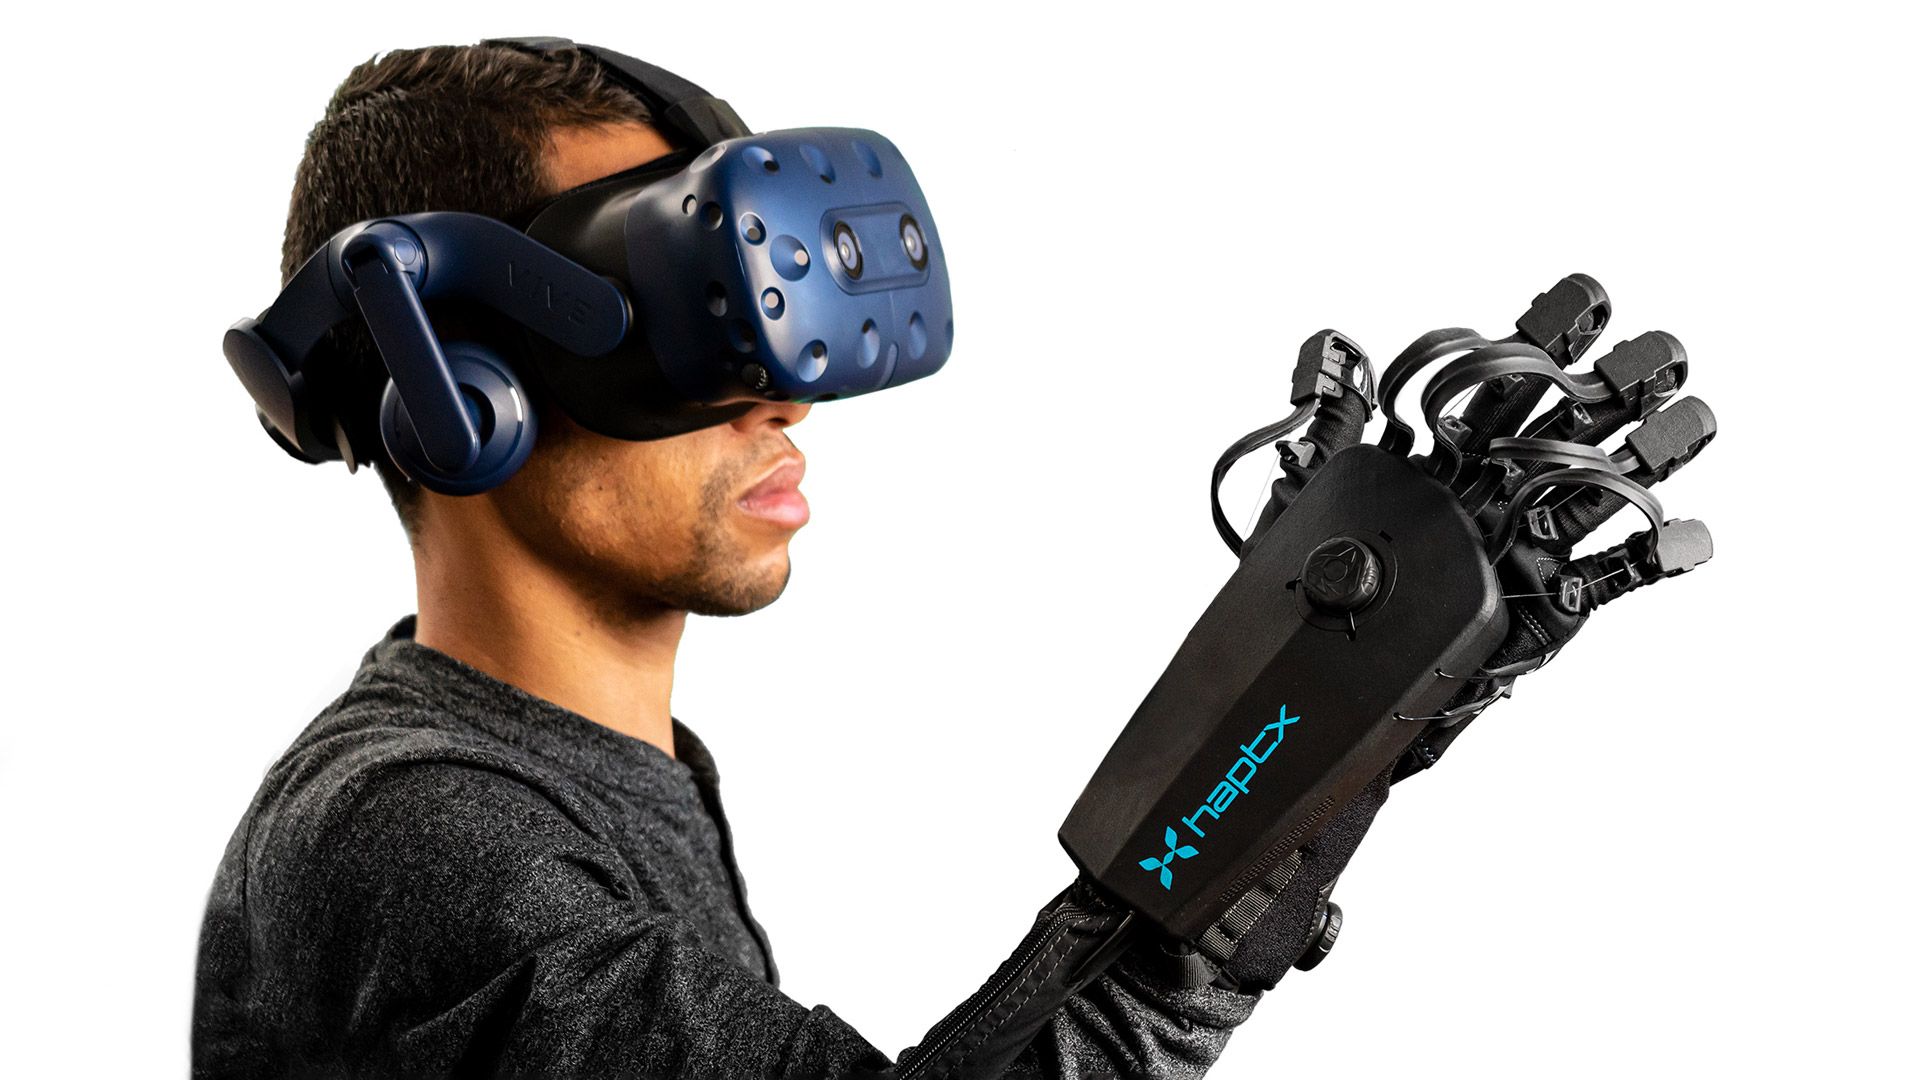 La startup con sede a Seattle definisce il prototipo di guanto Meta VR "identico" alla propria tecnologia brevettata